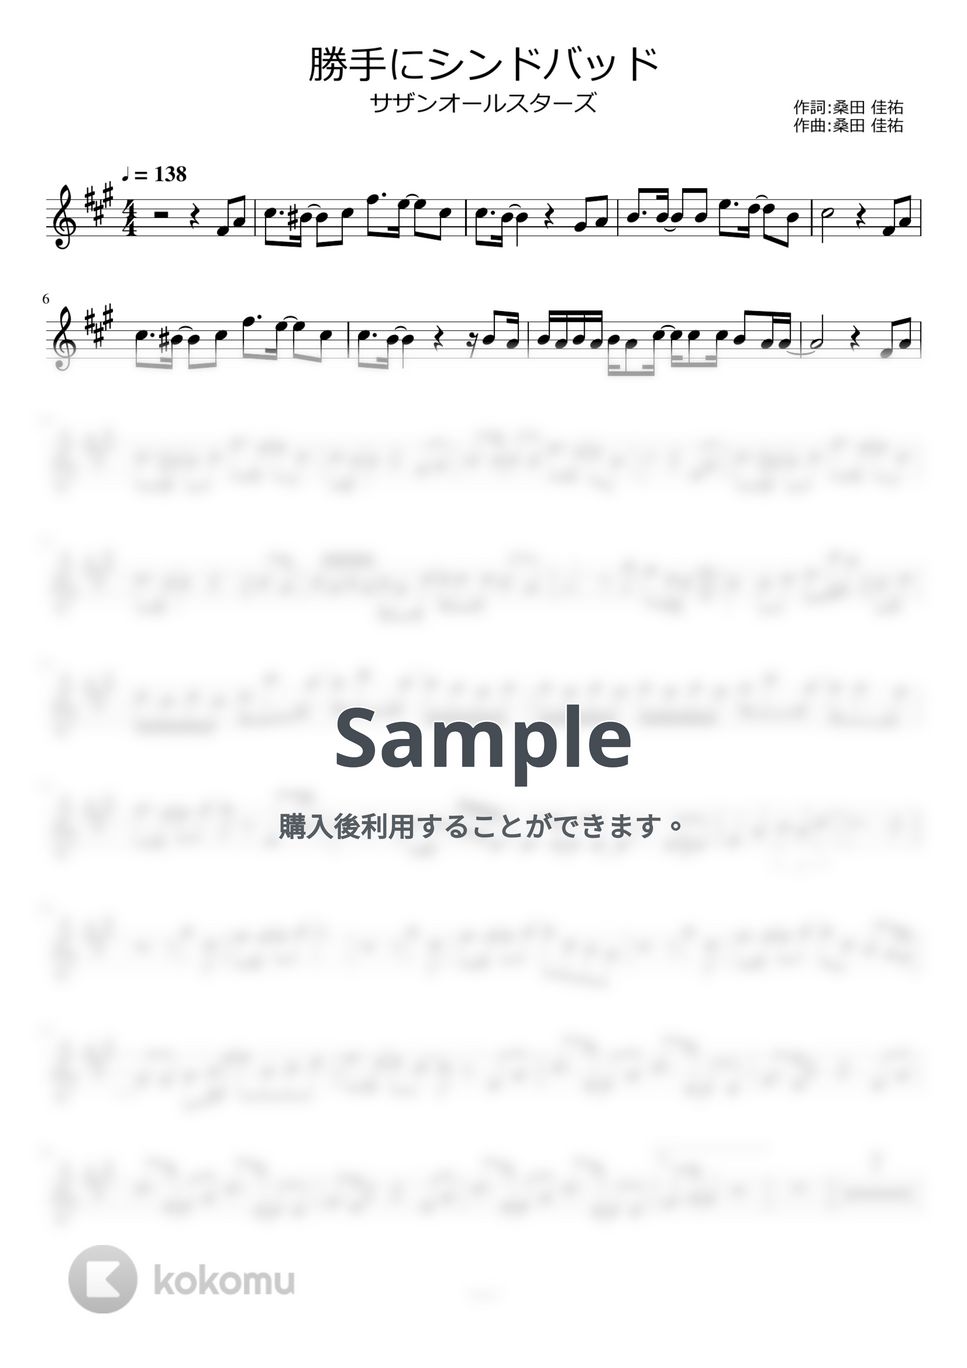 サザンオールスターズ - 勝手にシンドバッド by ayako music school